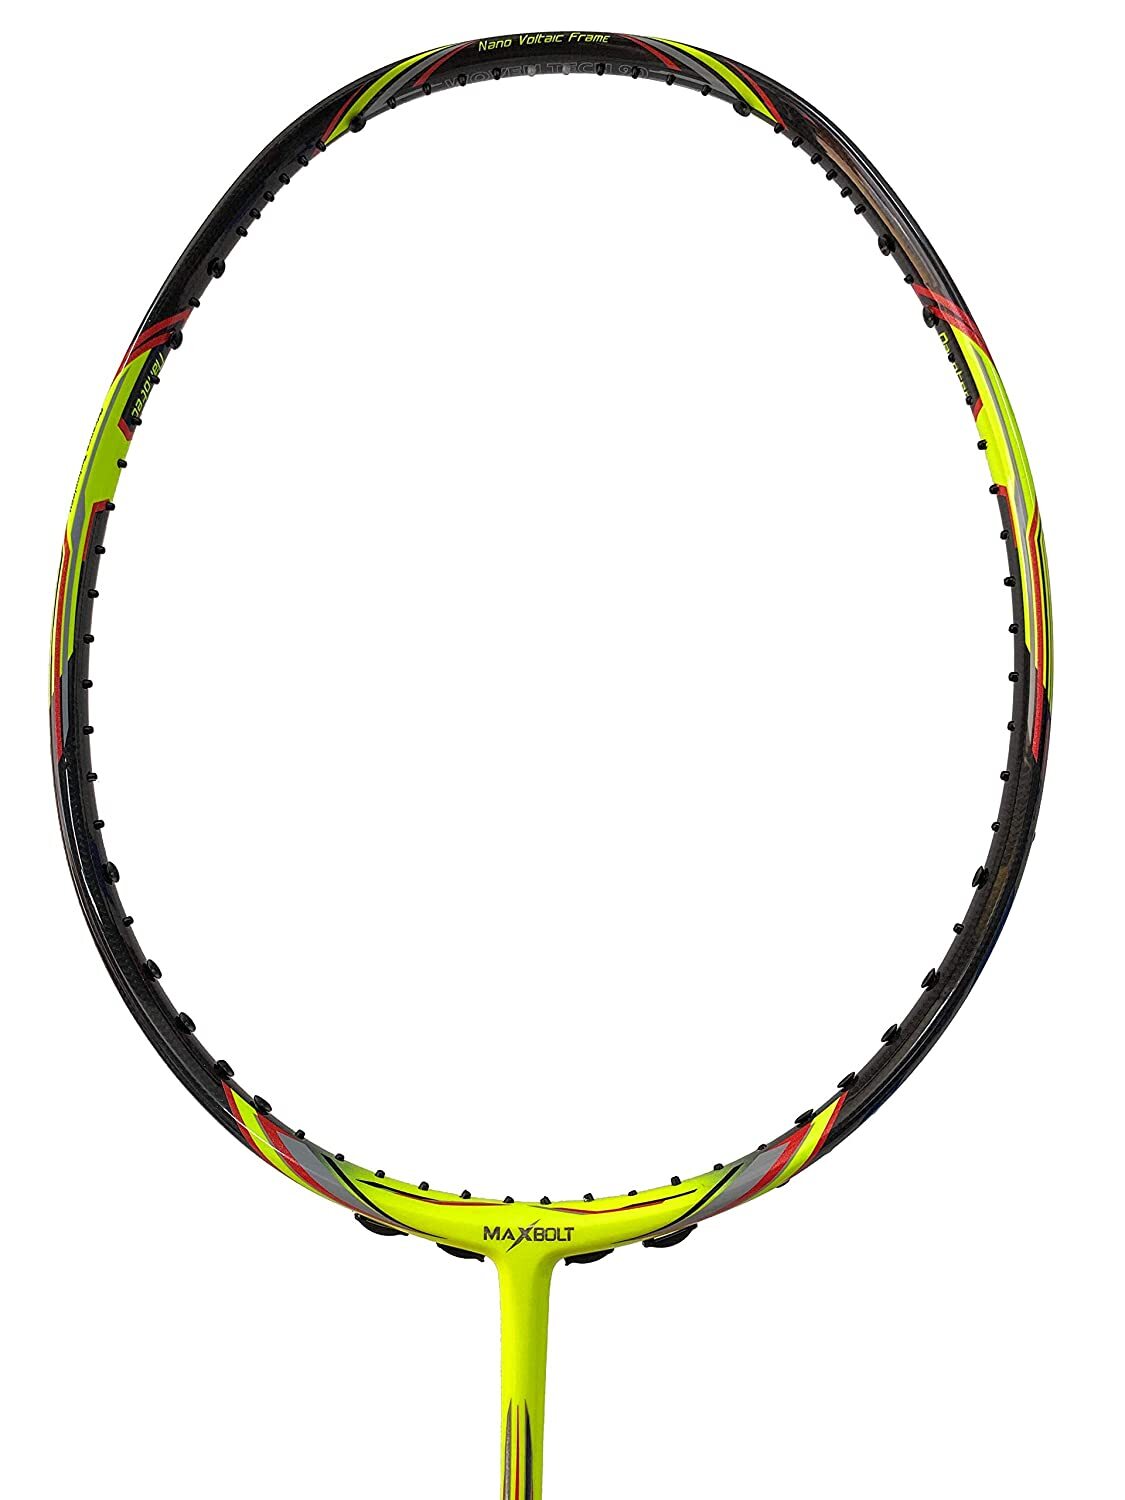 Maxbolt Woven Tech 90 Badminton Racket - Neon Green